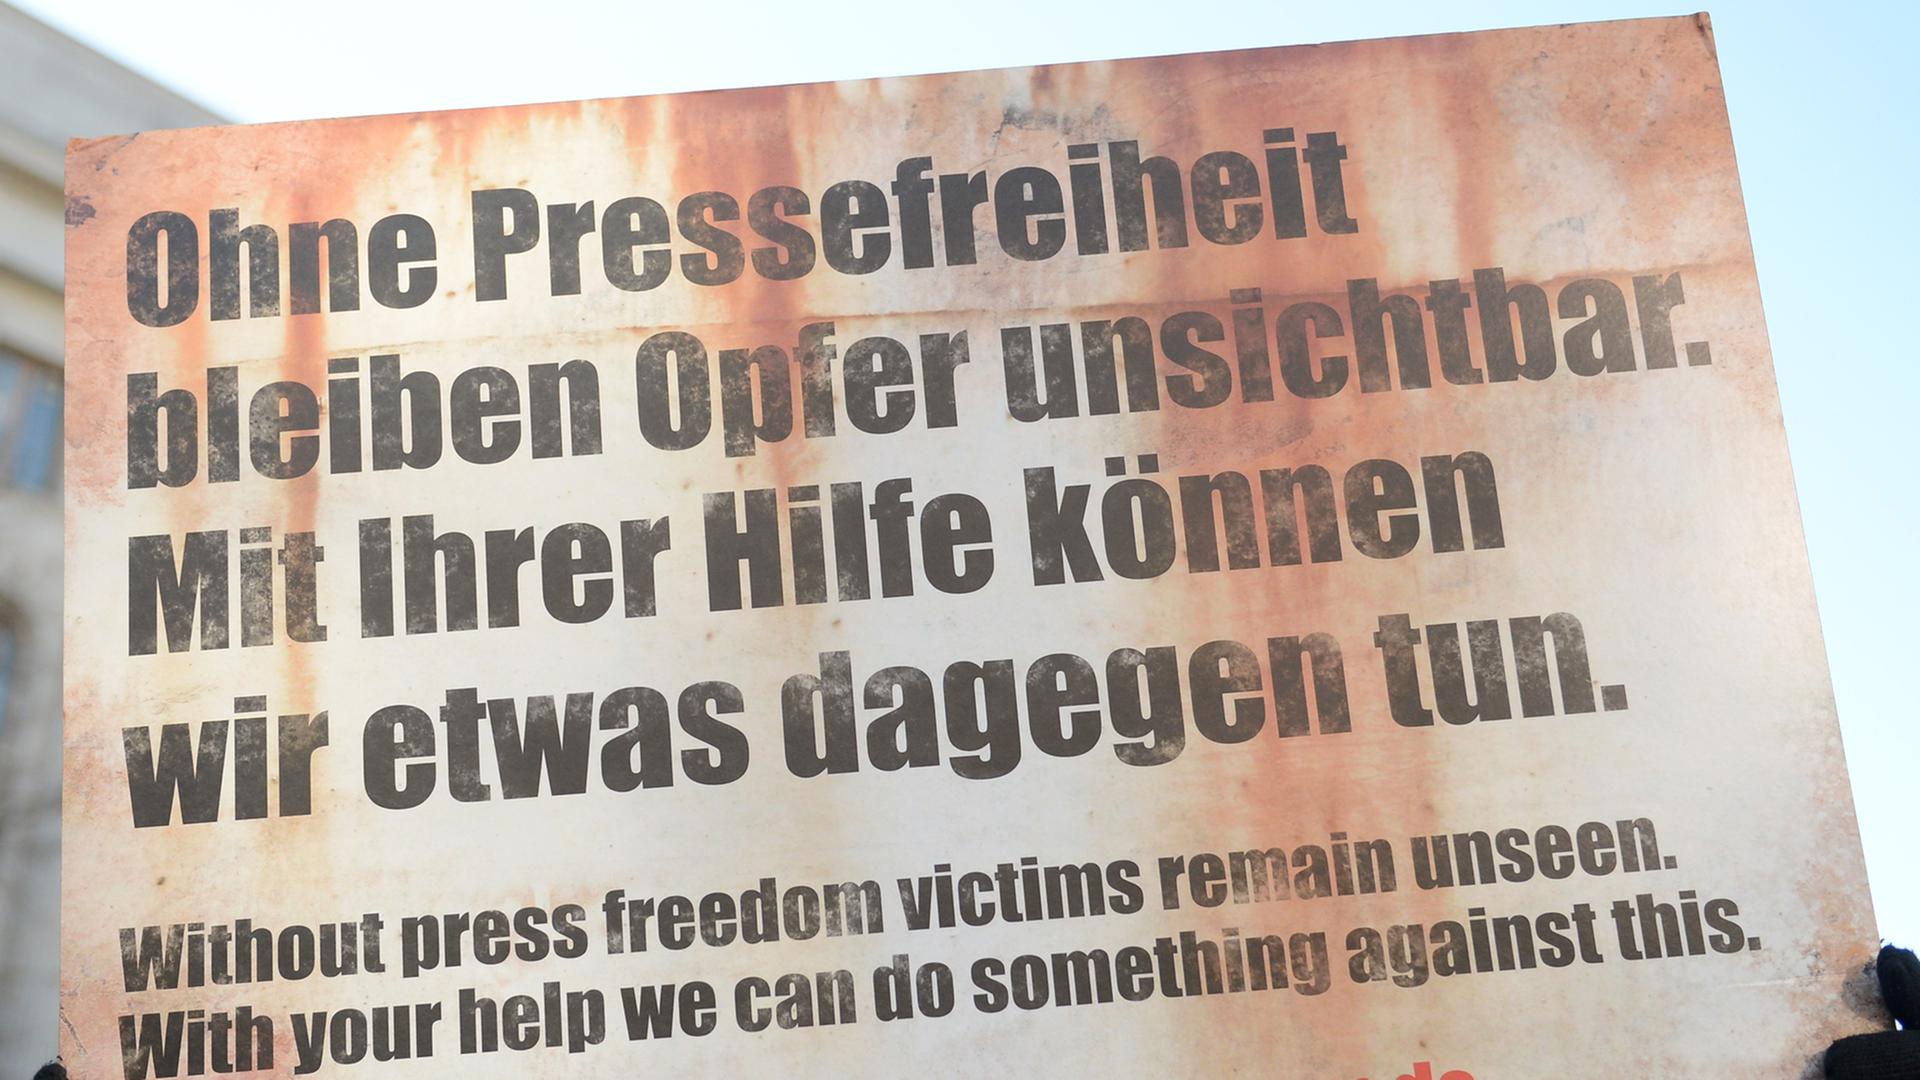 Ein Demonstrant der Organisation "Reporter ohne Grenzen" steht am 04.02.2014 vor der russischen Botschaft in Berlin. Er hält ein Schild hoch mit dem Text: "Ohne Pressefreiheit bleiben Opfer unsichtbar. Mit ihrer Hilfe können wir etwas dagegen tun.